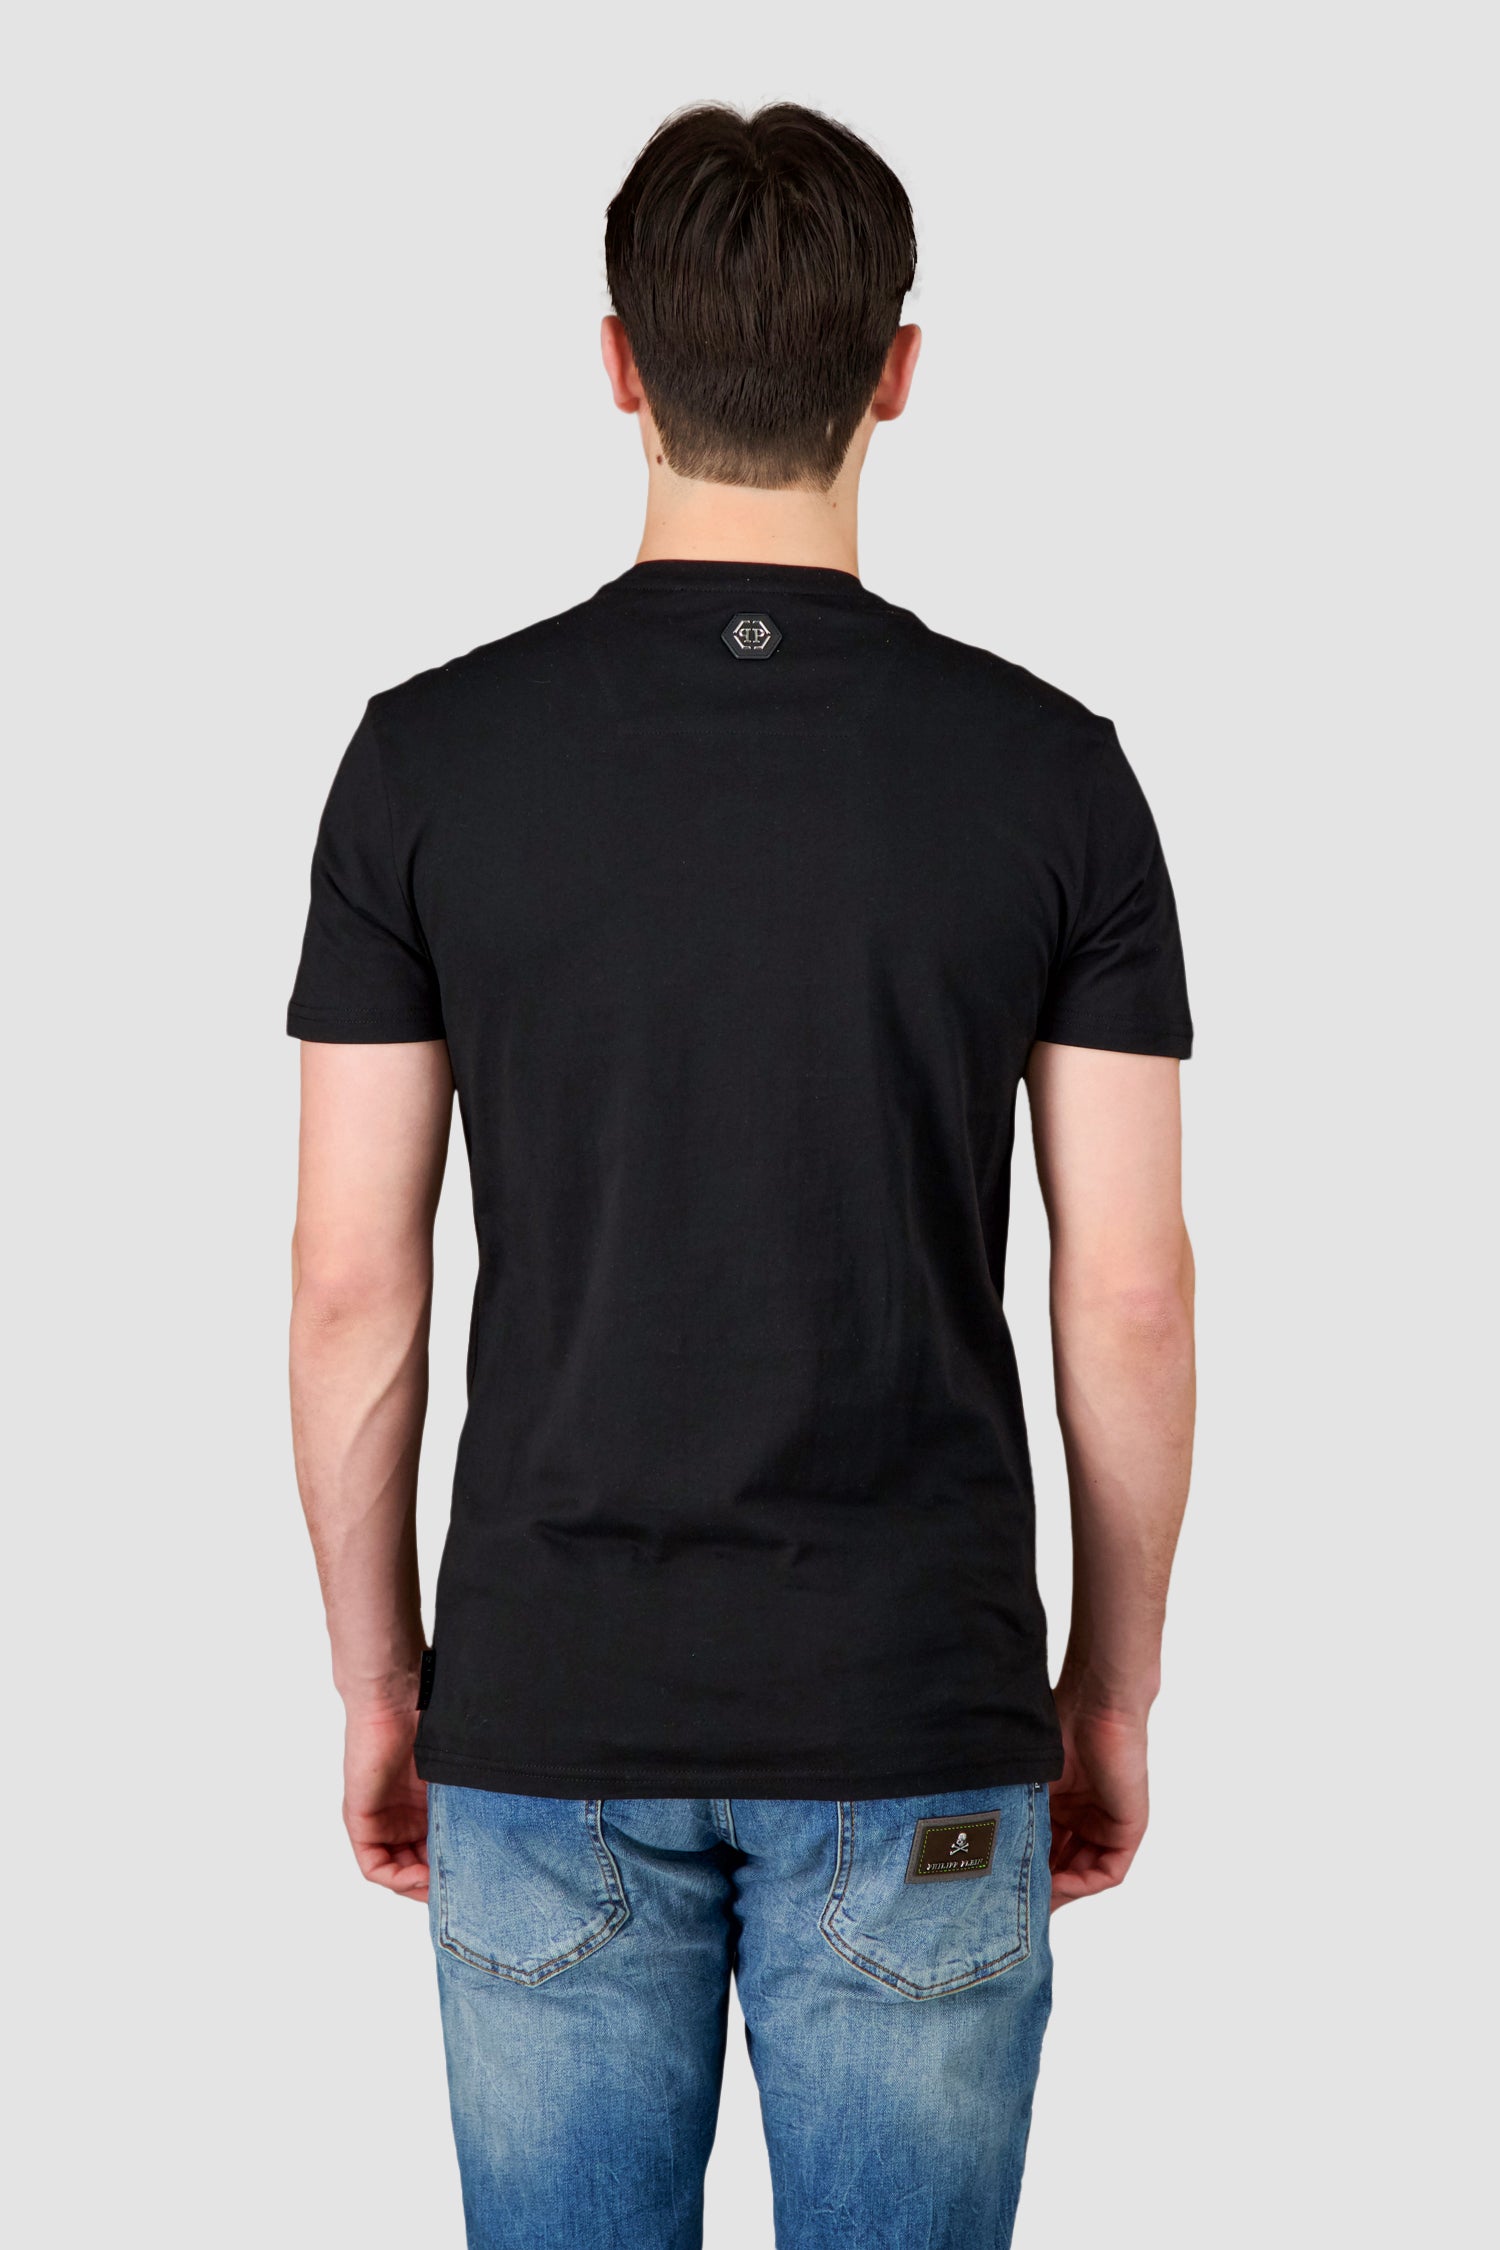 Philipp Plein Black Round Neck LS Skull Strass T-Shirt